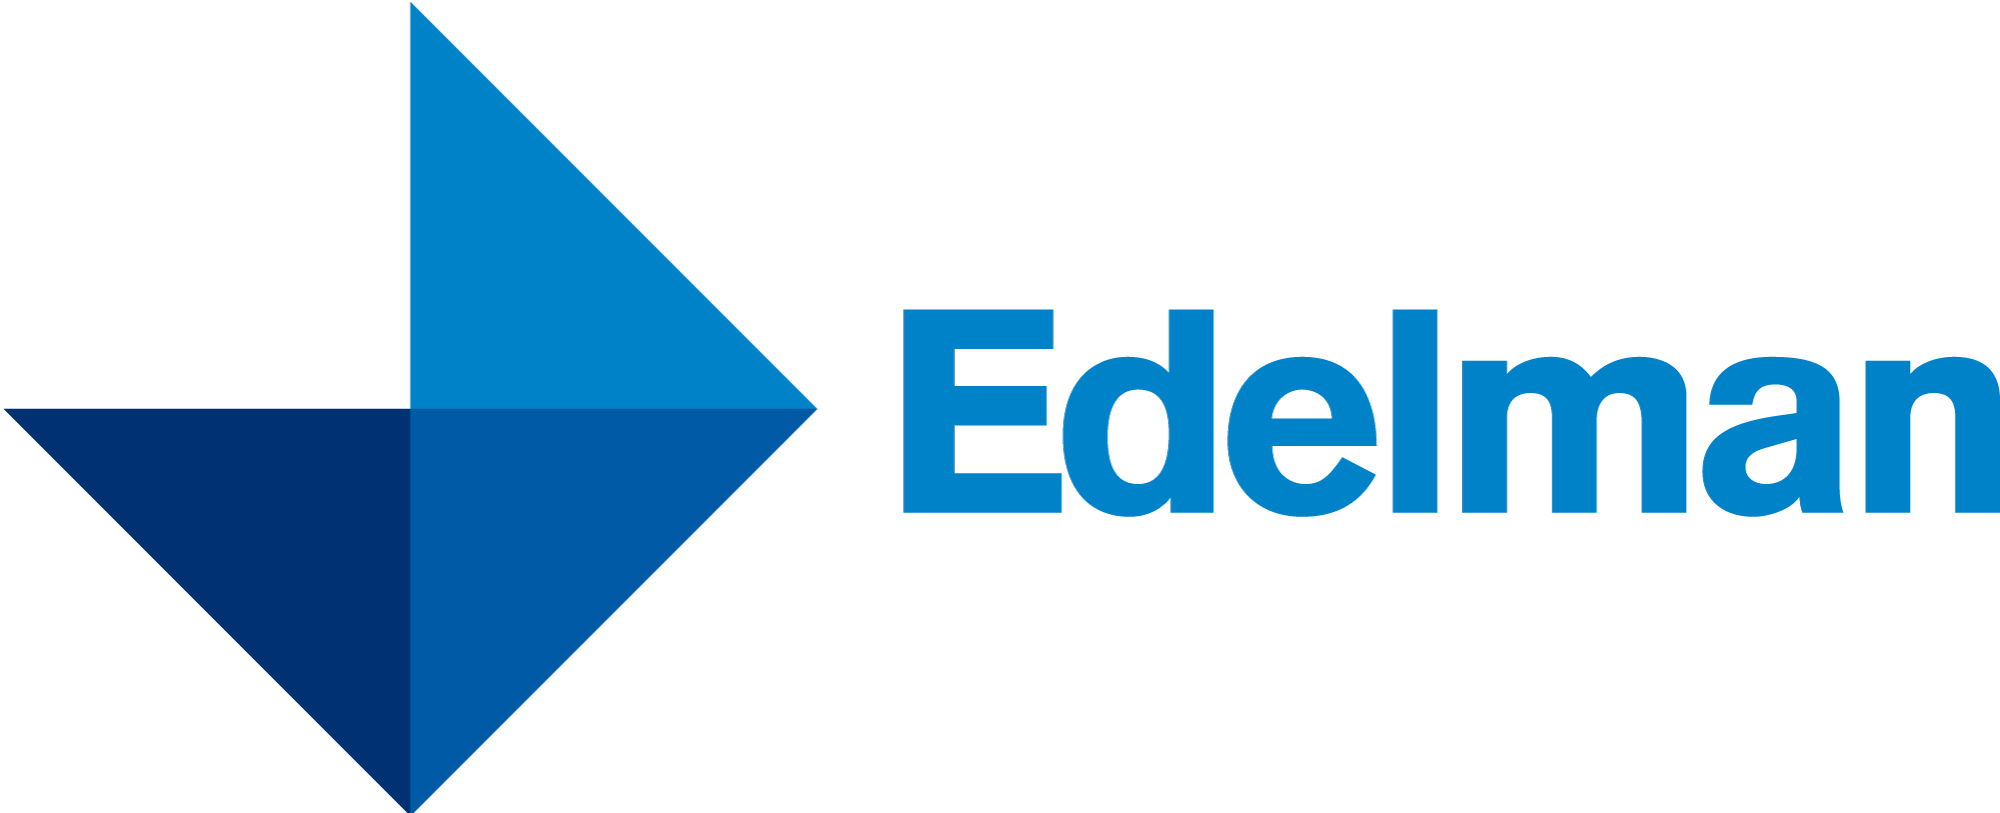 Edelman-logo.png